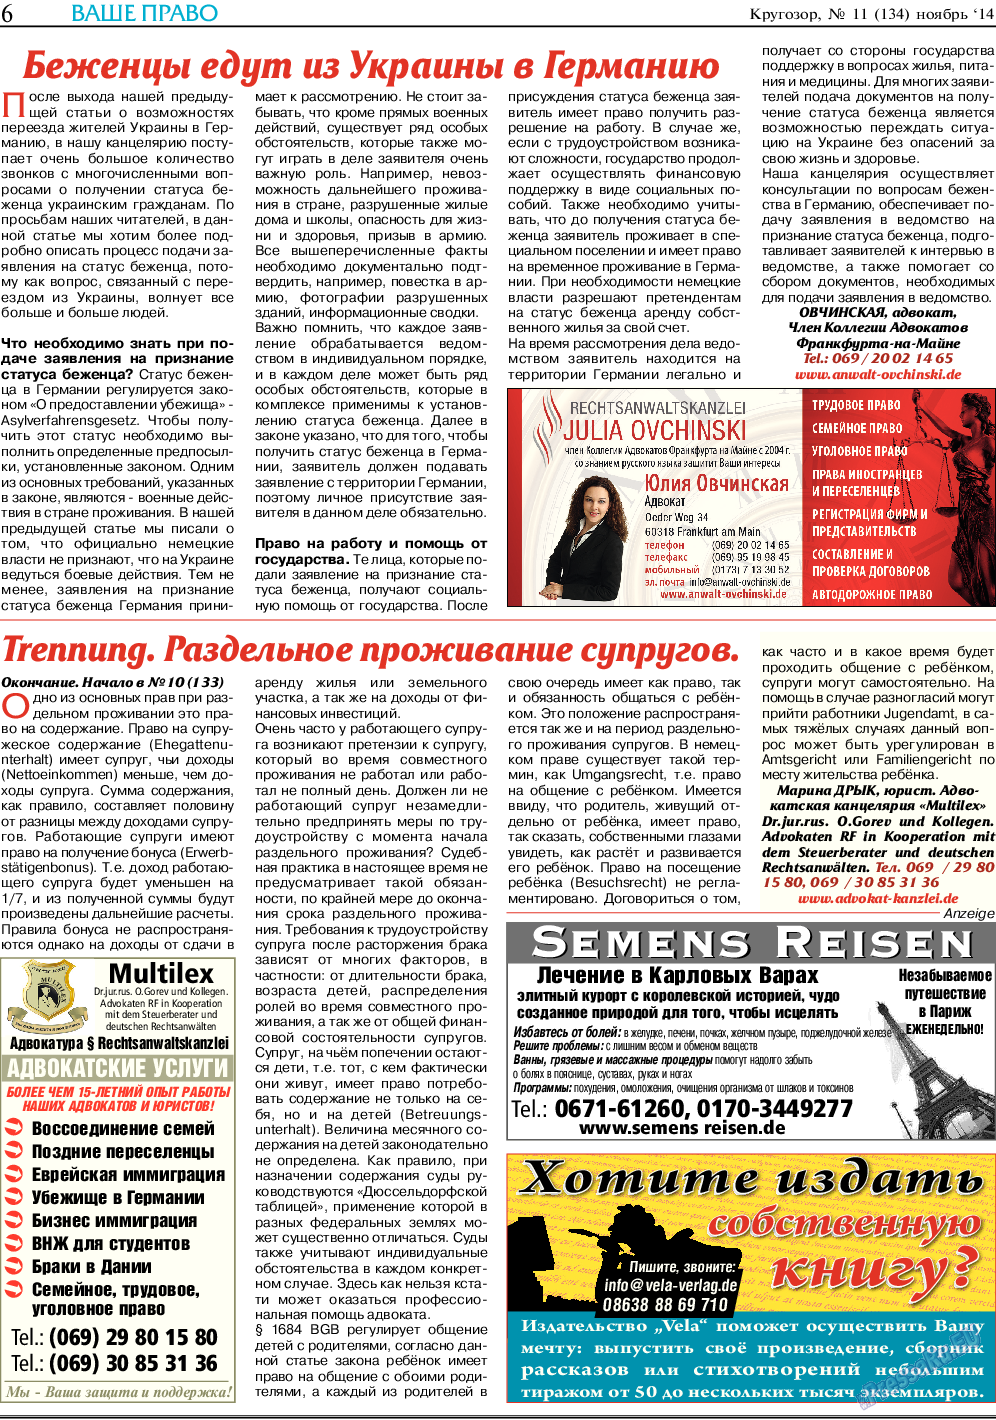 Кругозор, газета. 2014 №11 стр.6